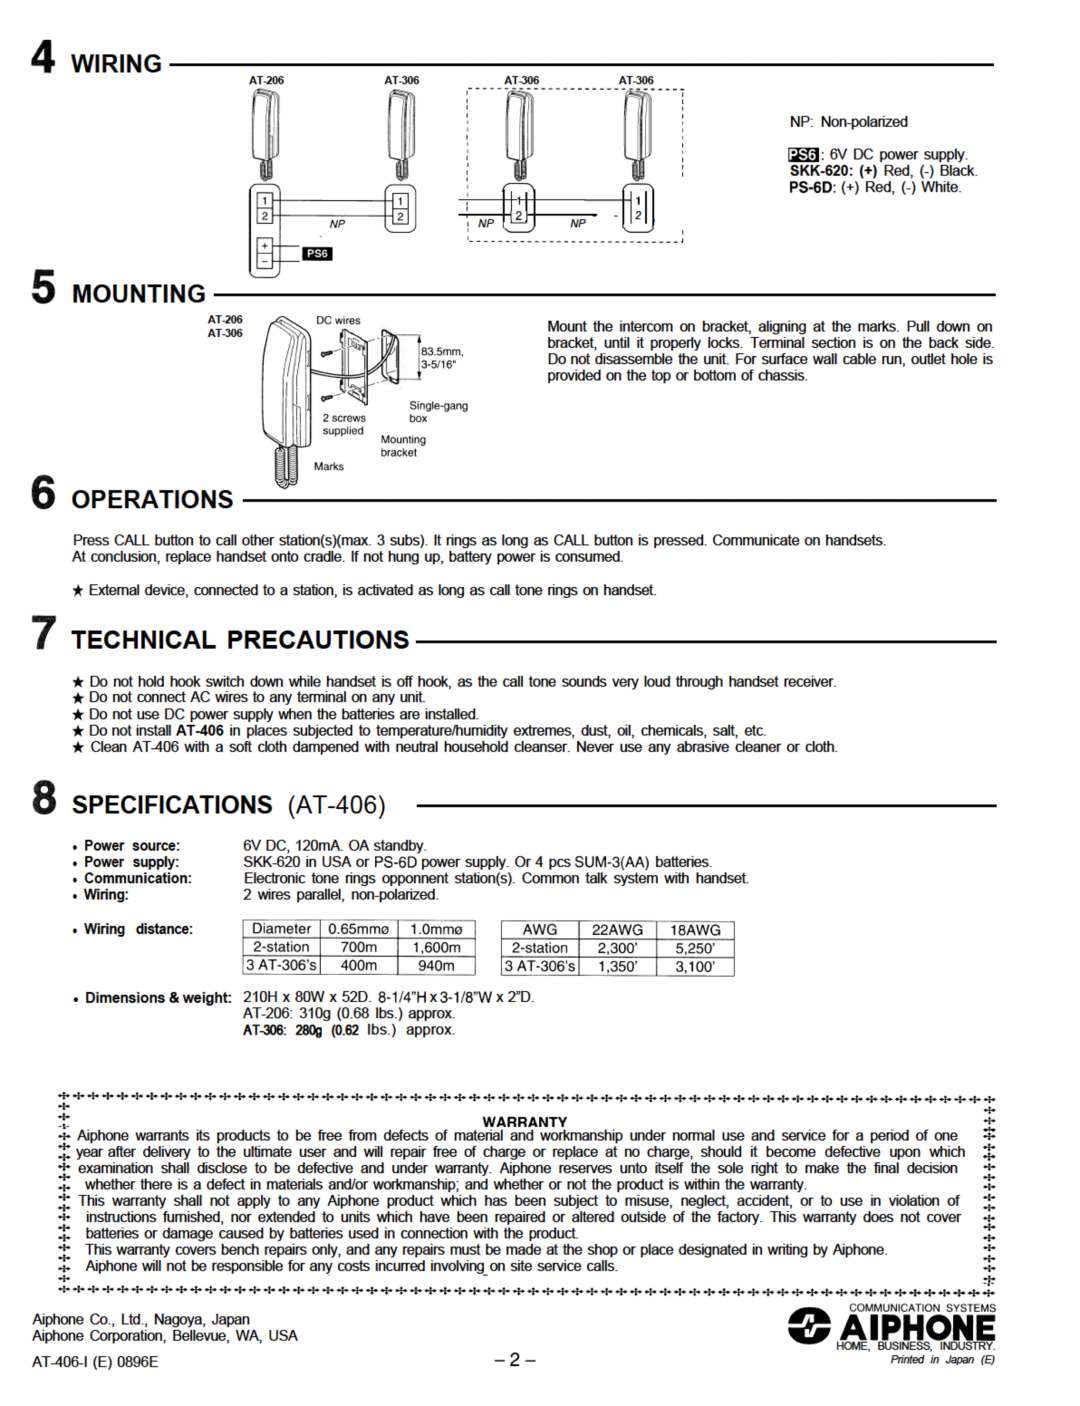 Aiphone AT-406, AT-306 operation manual 